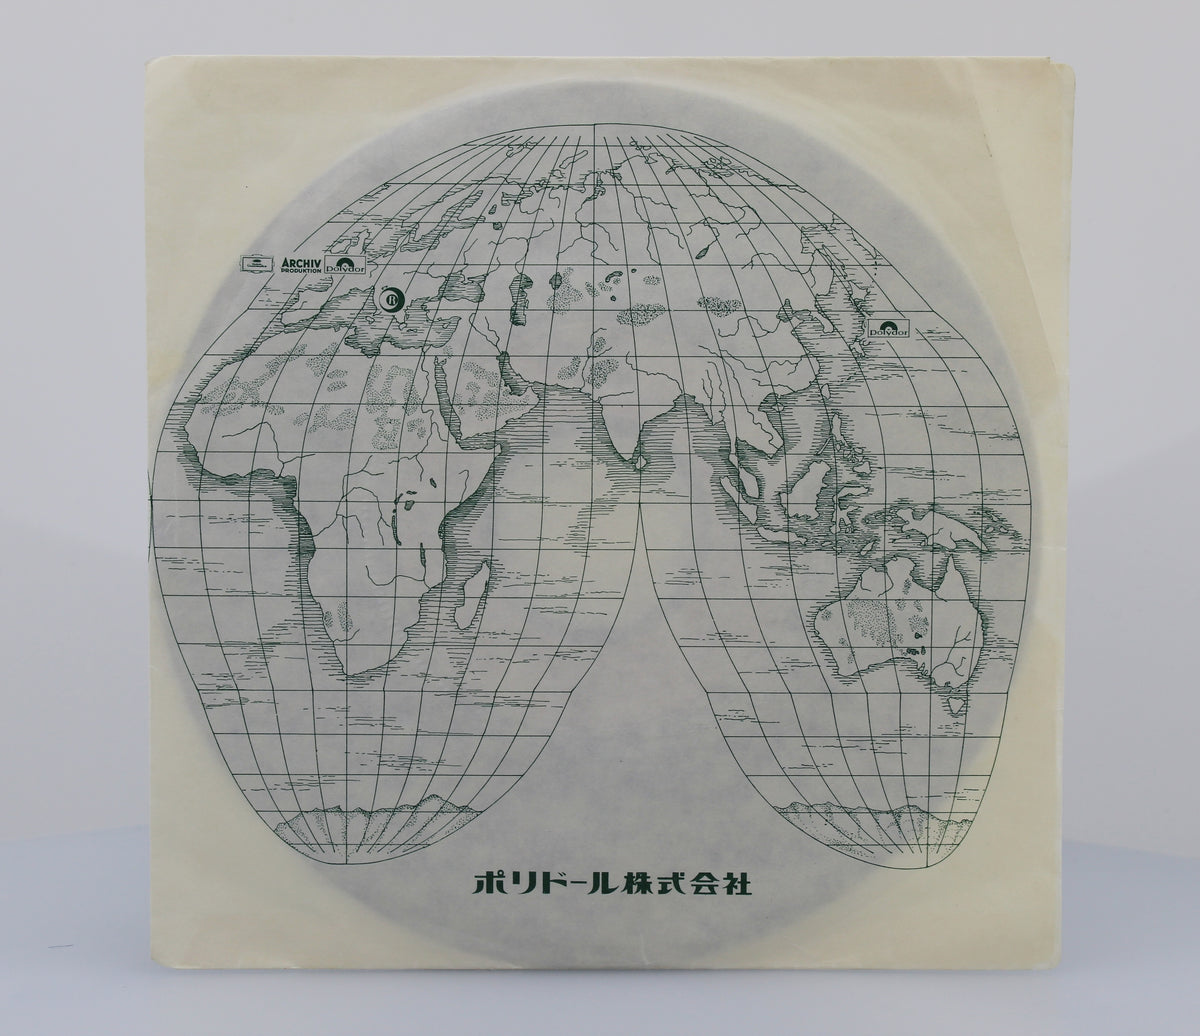 Bee Gees, Vinyl 7&quot; (45rpm), Japan